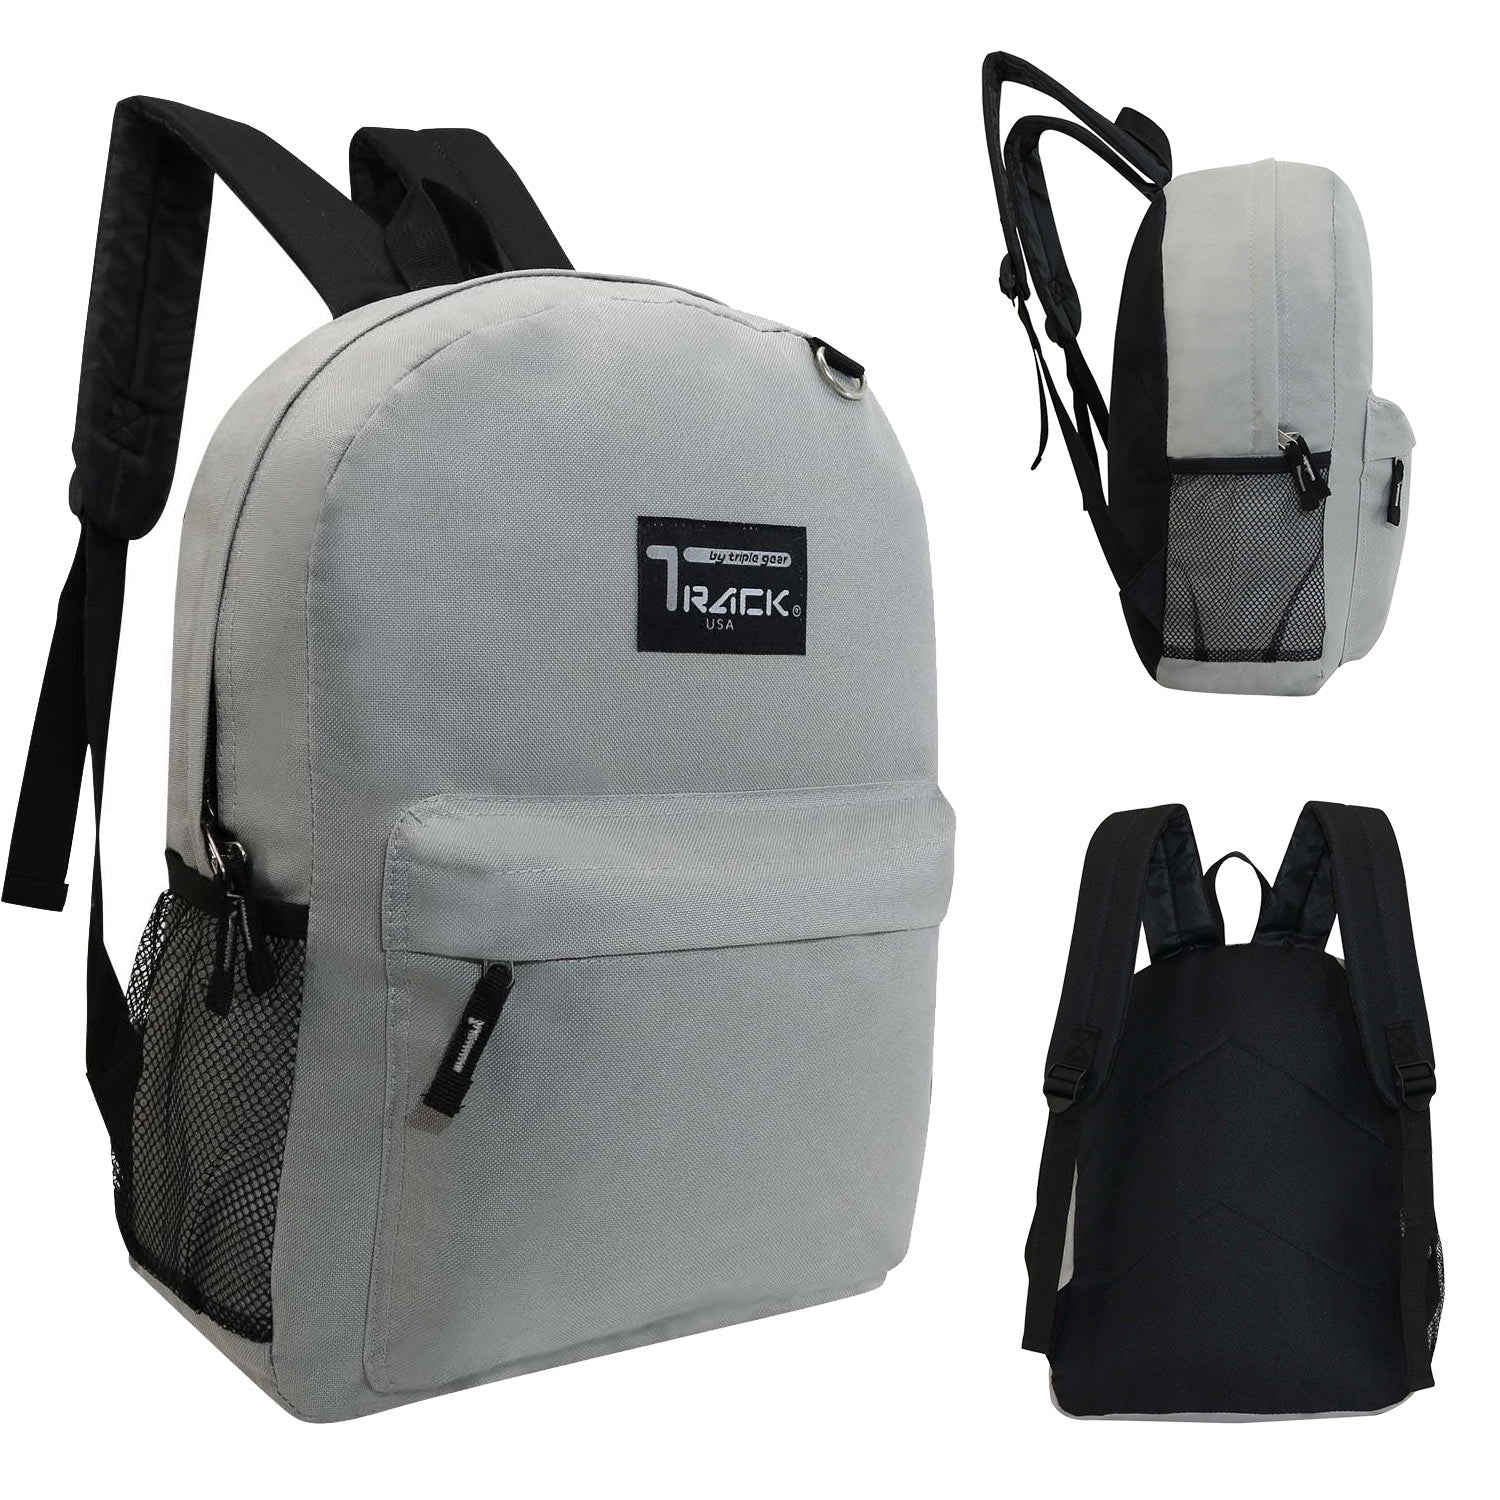 light gray 17" wholesale backpack for school in bulk